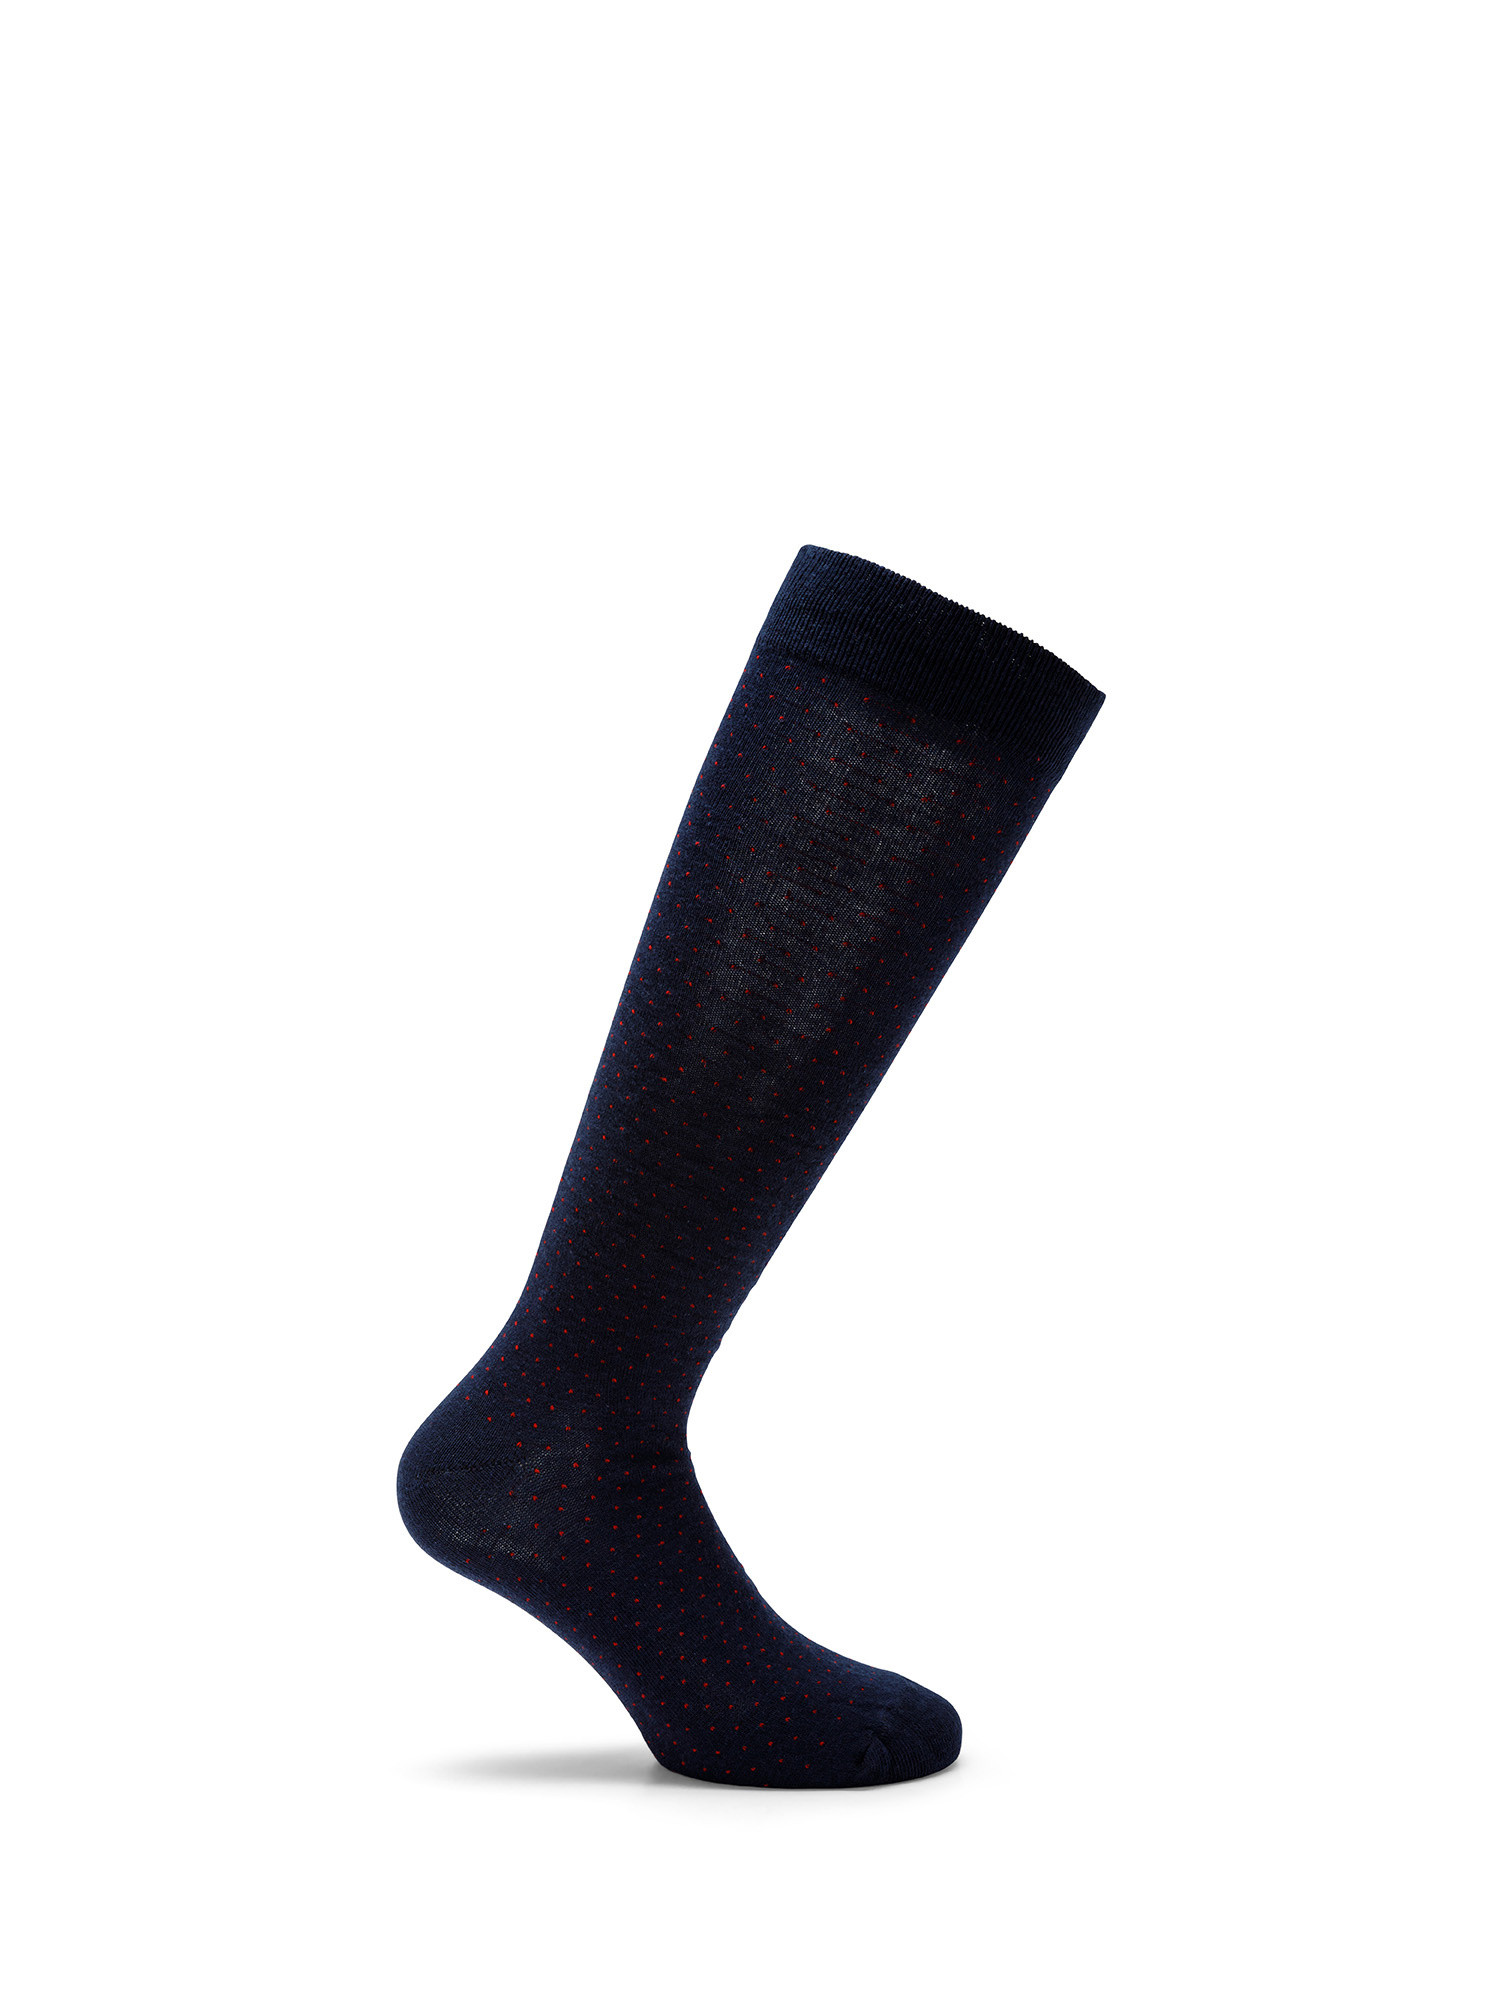 Luca D'Altieri - Set of 3 patterned long socks, Blue, large image number 1